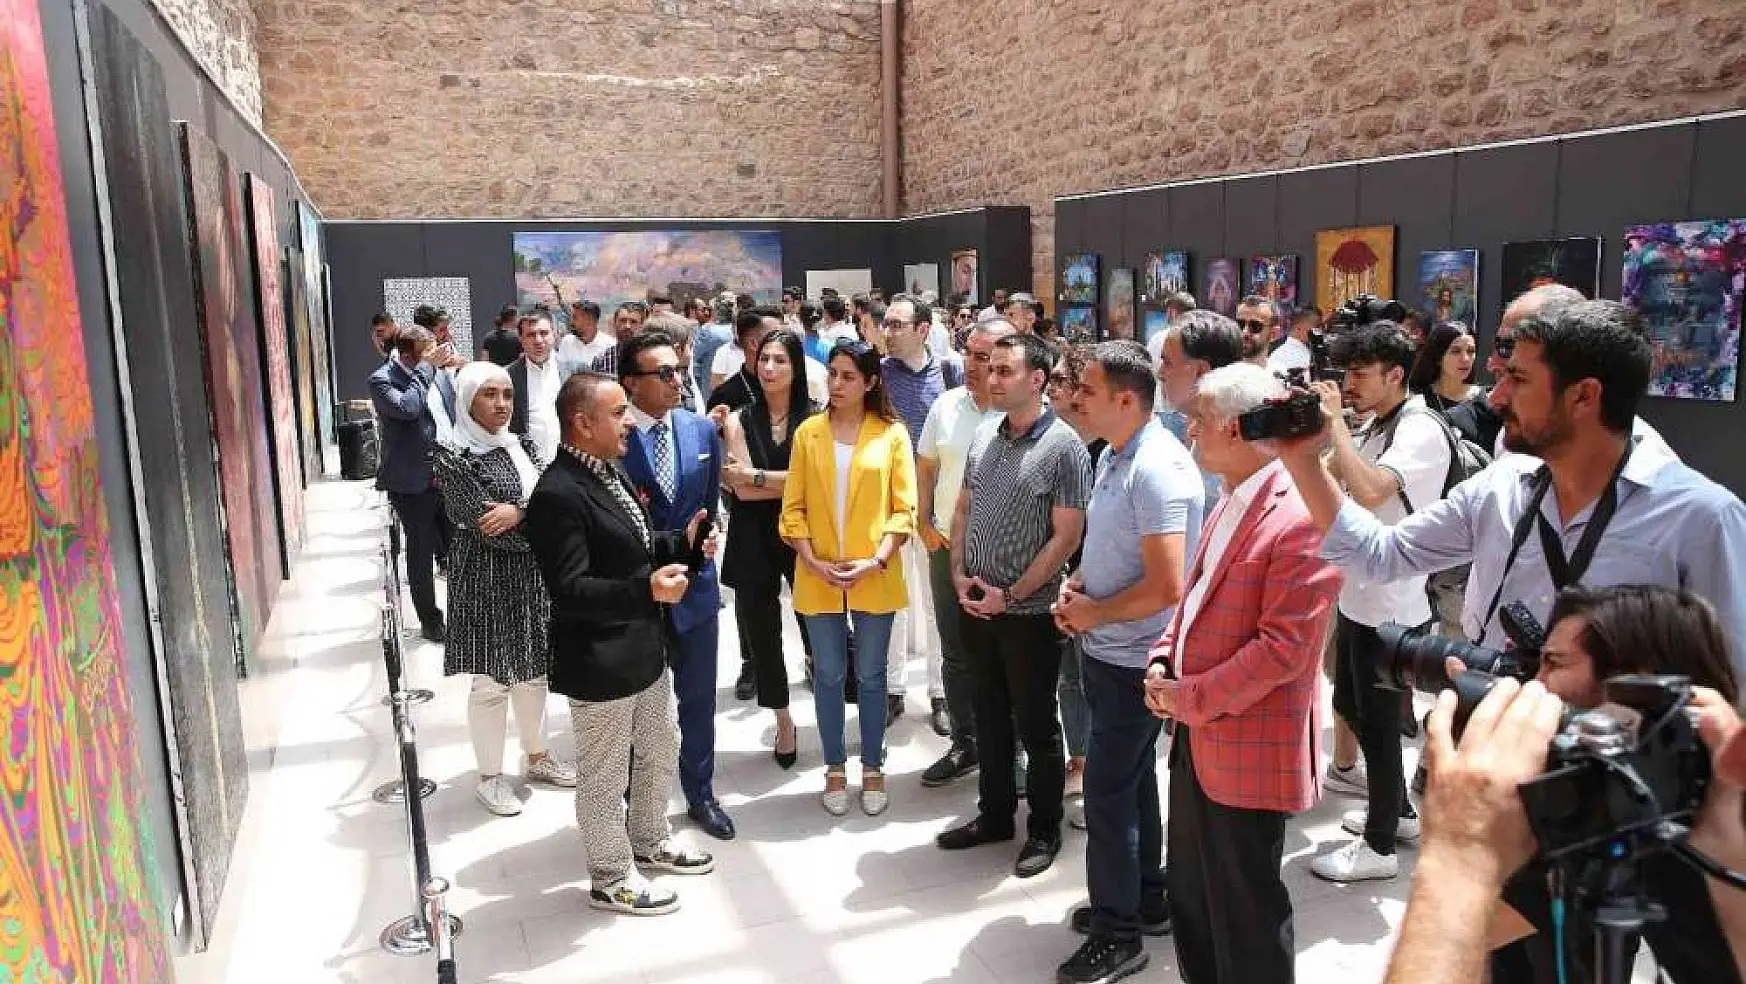 'Nuh' sergisi İshak Paşa Sarayı'nda açıldı